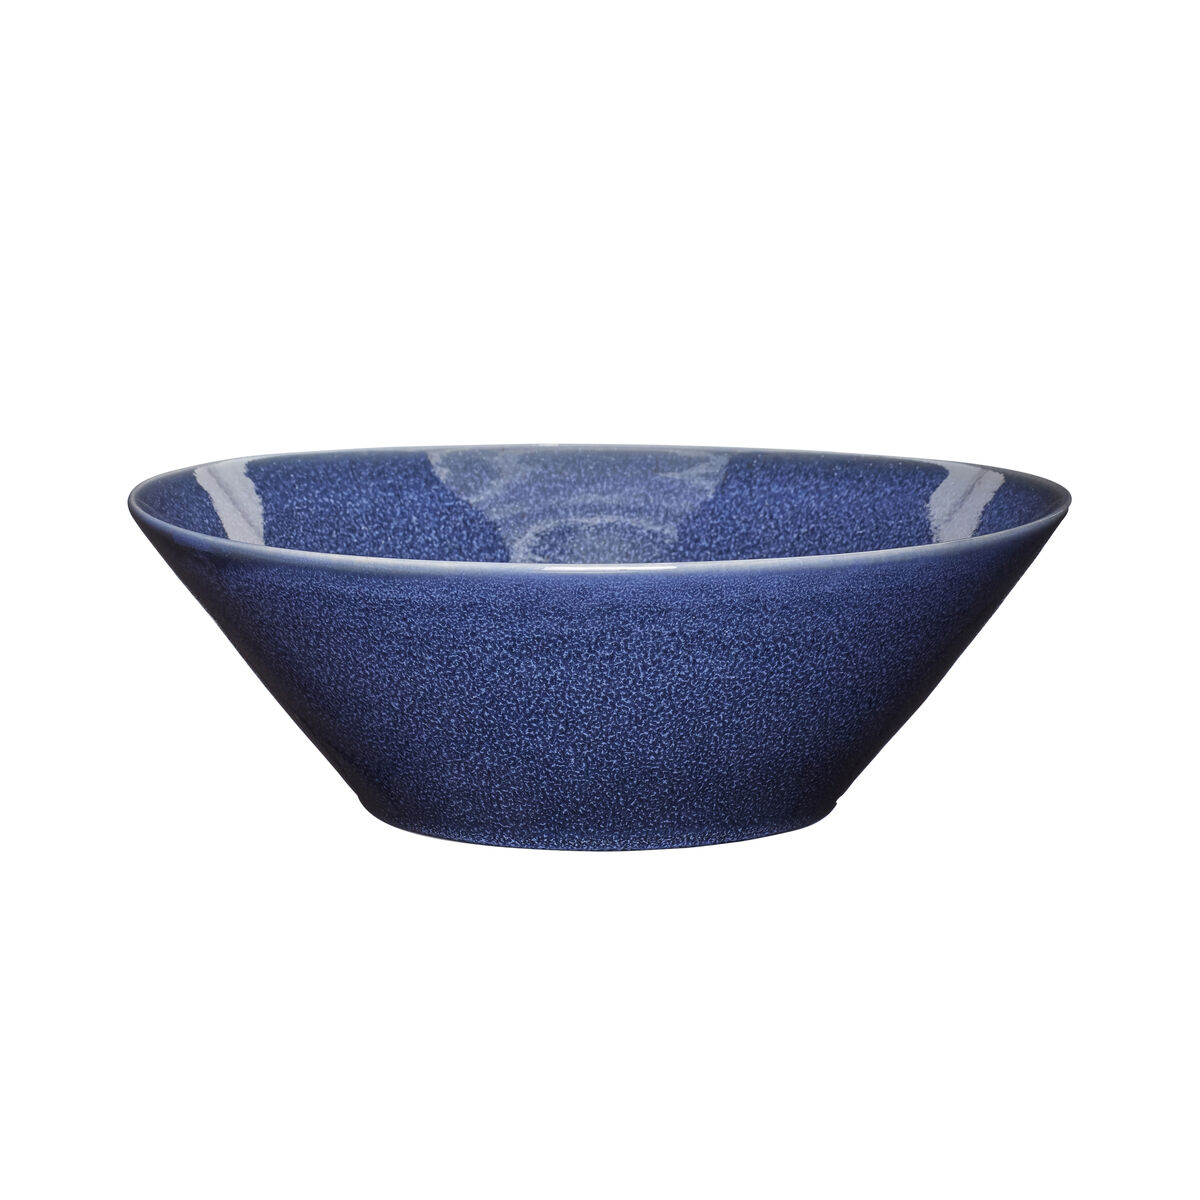 Hubsch Large Handmade Blue Glaze Bowl